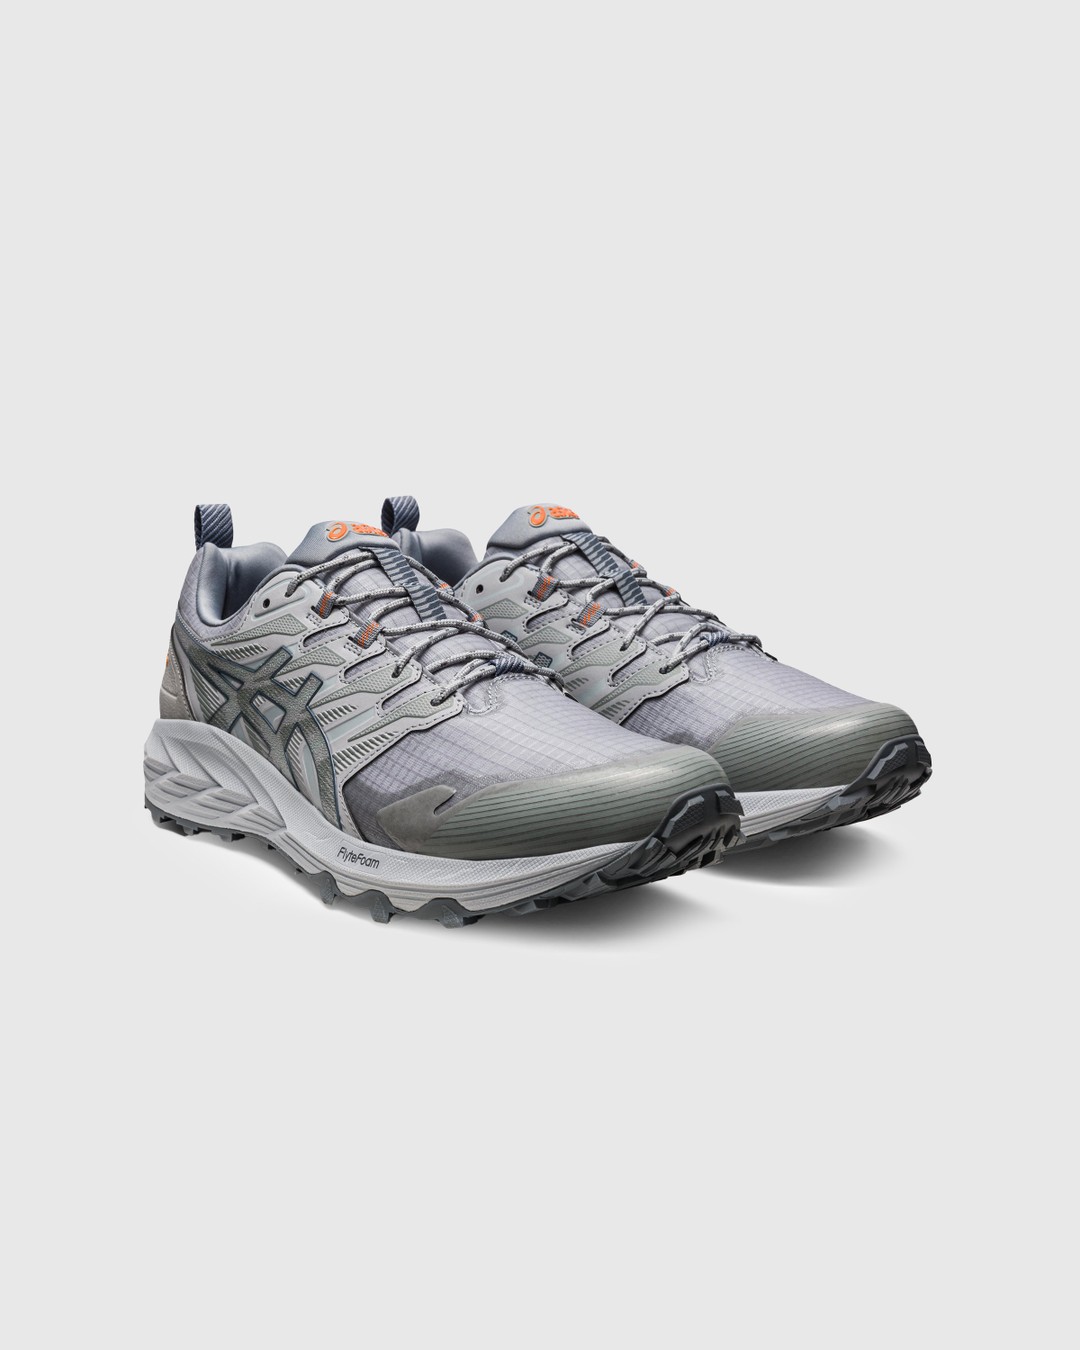 asics – GEL-TRABUCO TERRA SPS Grey - Low Top Sneakers - Grey - Image 3